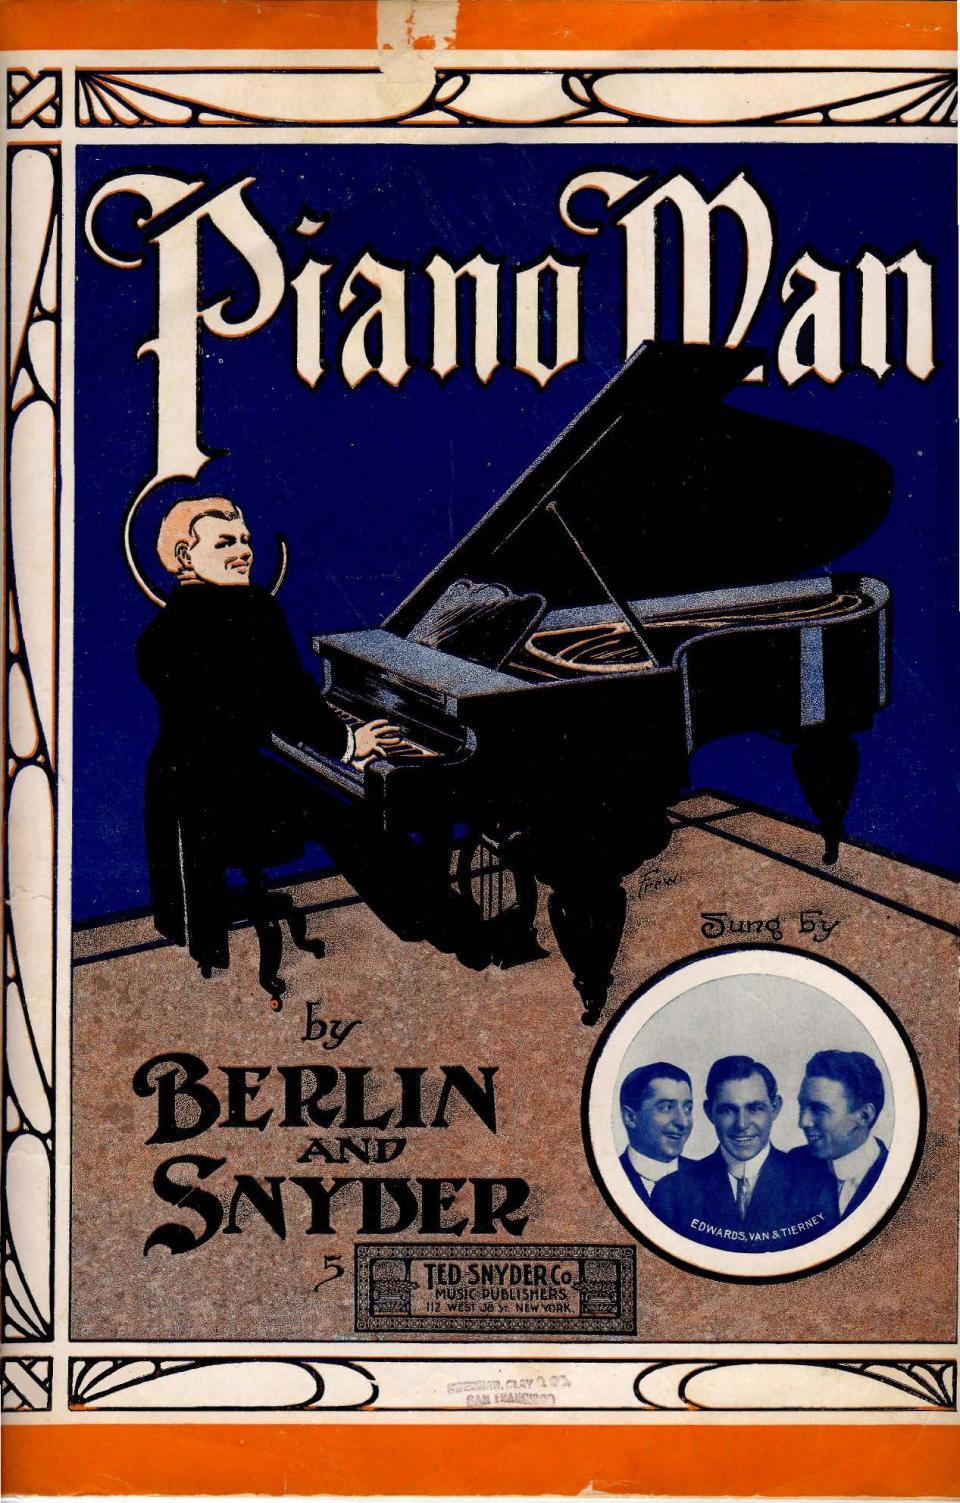 Berlin PianoMan.jpg